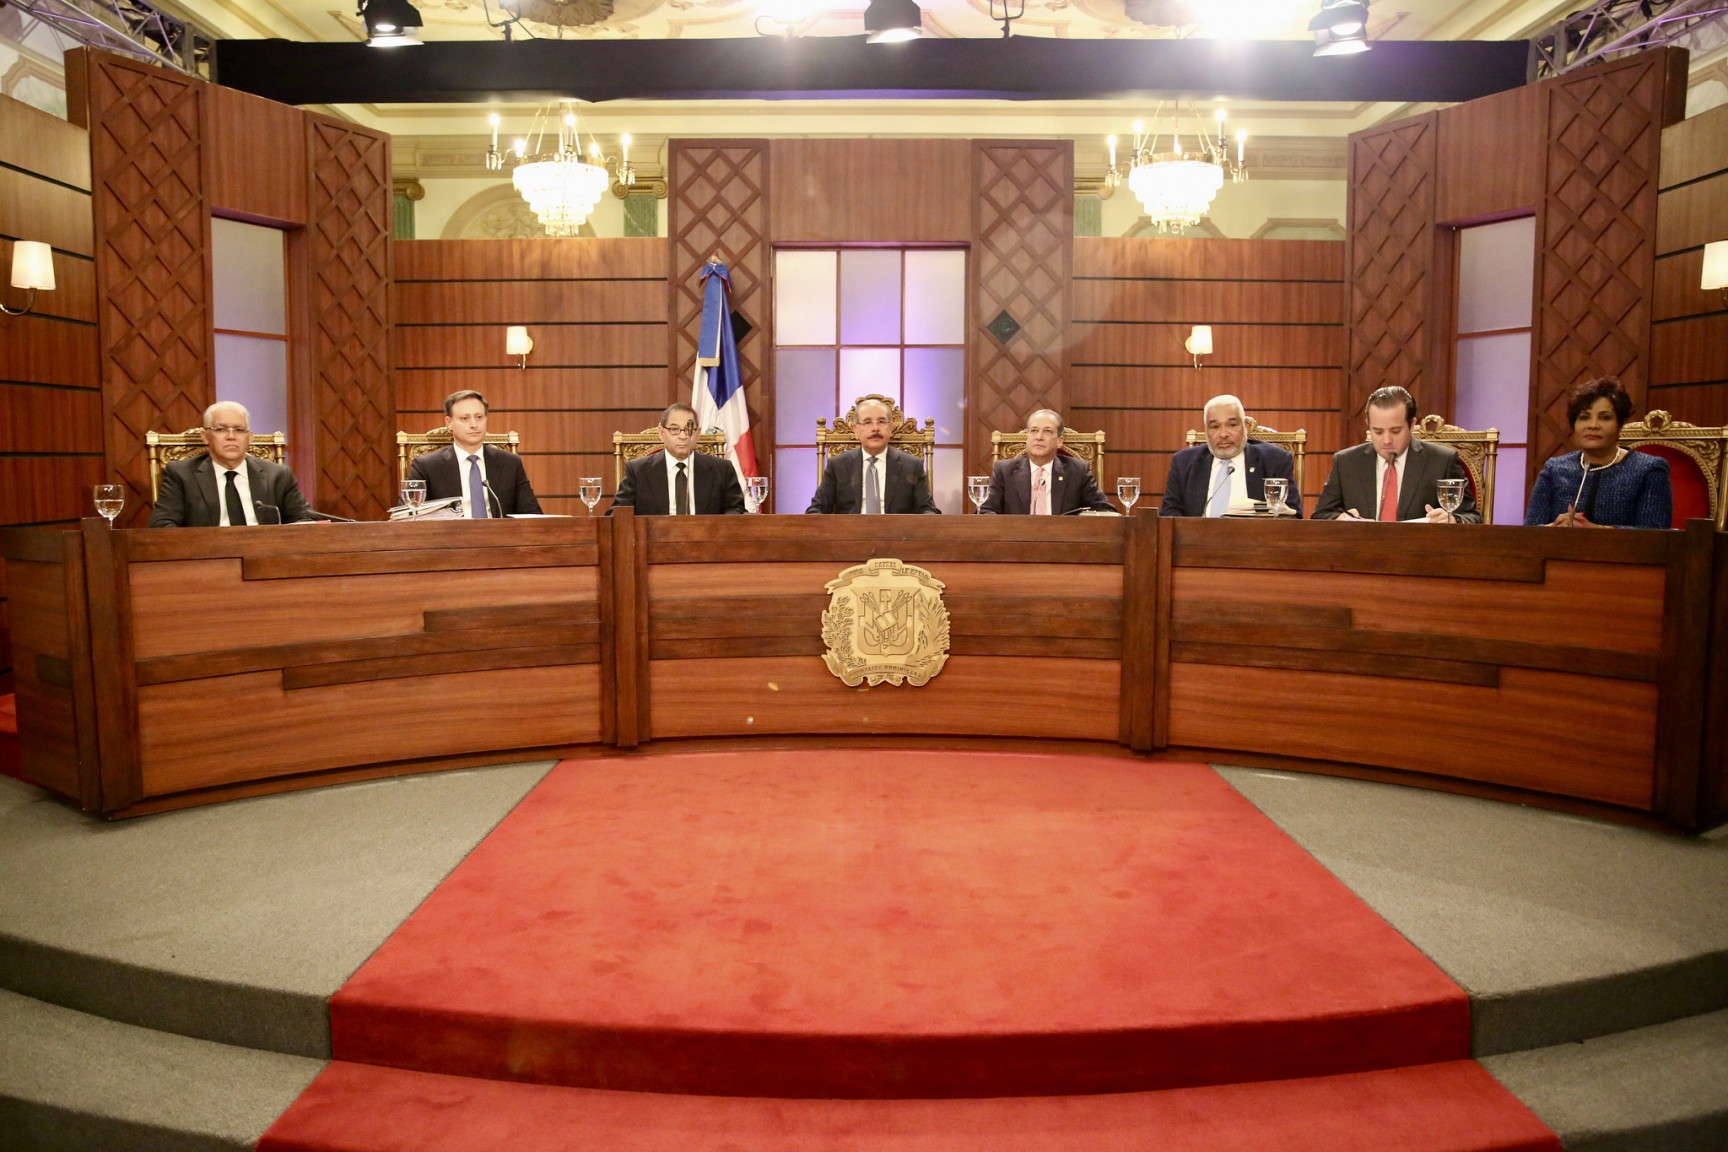 REPÚBLICA DOMINICANA: Consejo Nacional de la Magistratura evalúa a actuales jueces Suprema Corte de Justicia